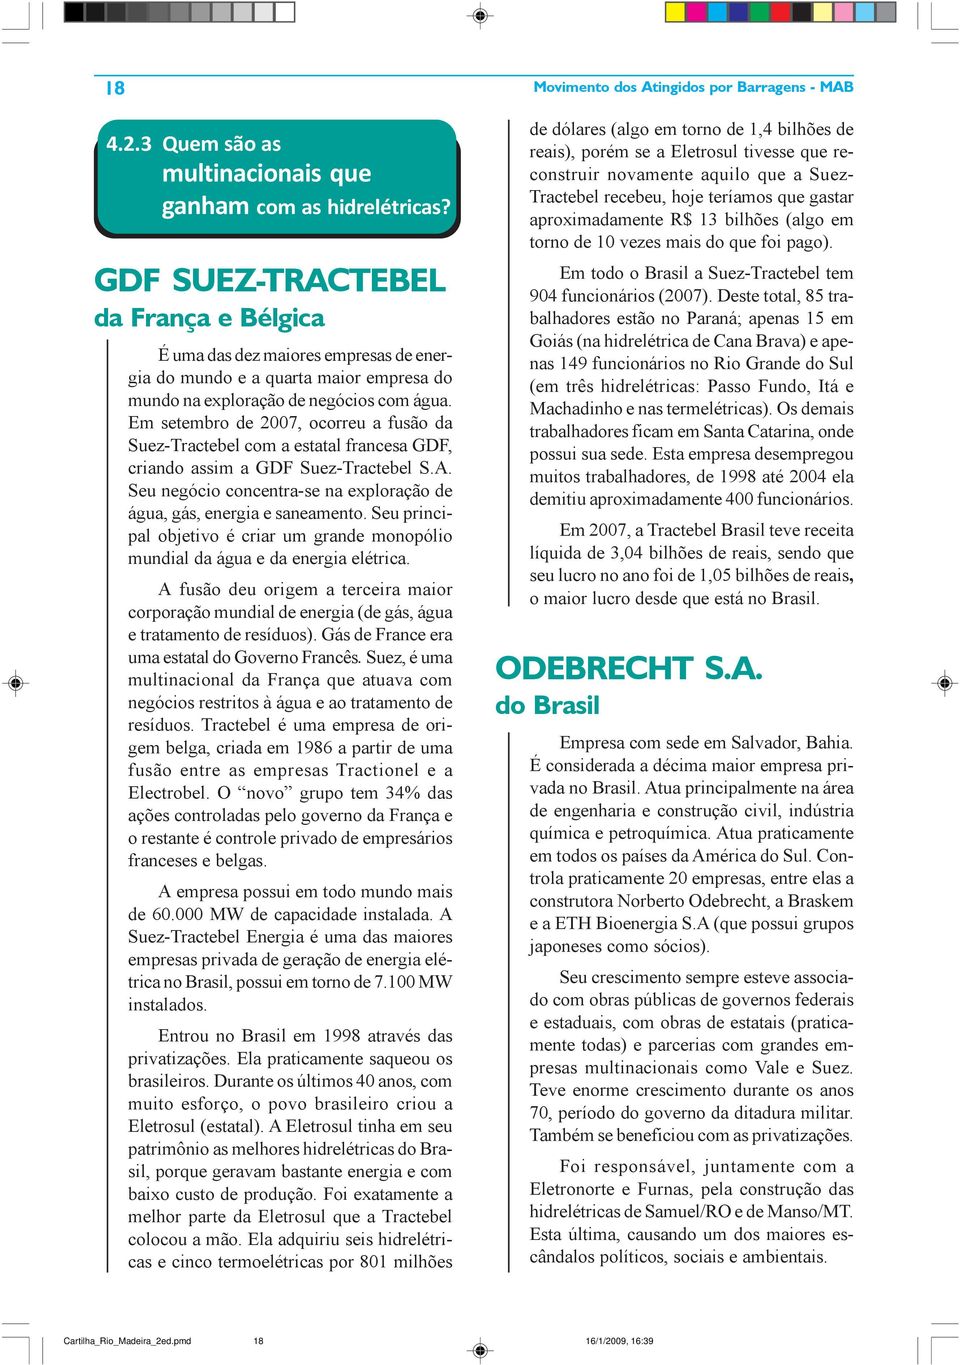 Em setembro de 2007, ocorreu a fusão da Suez-Tractebel com a estatal francesa GDF, criando assim a GDF Suez-Tractebel S.A. Seu negócio concentra-se na exploração de água, gás, energia e saneamento.